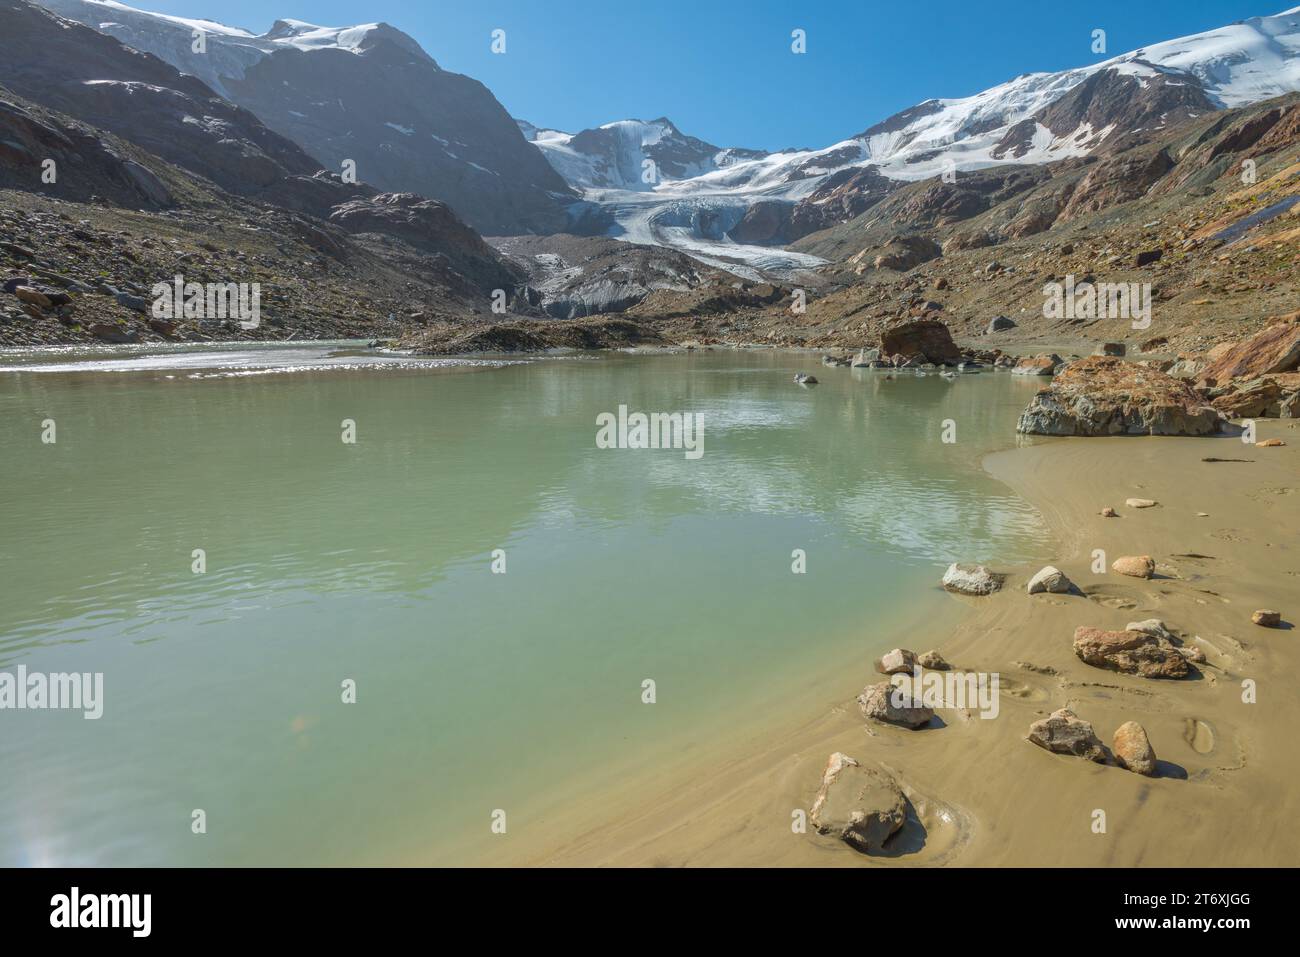 Glacier Forni dans les Alpes italiennes, avec la langue glaciaire fondant sur un ruisseau glaciaire chargé de limon. Petite plage avec sable humide et pierres. Banque D'Images